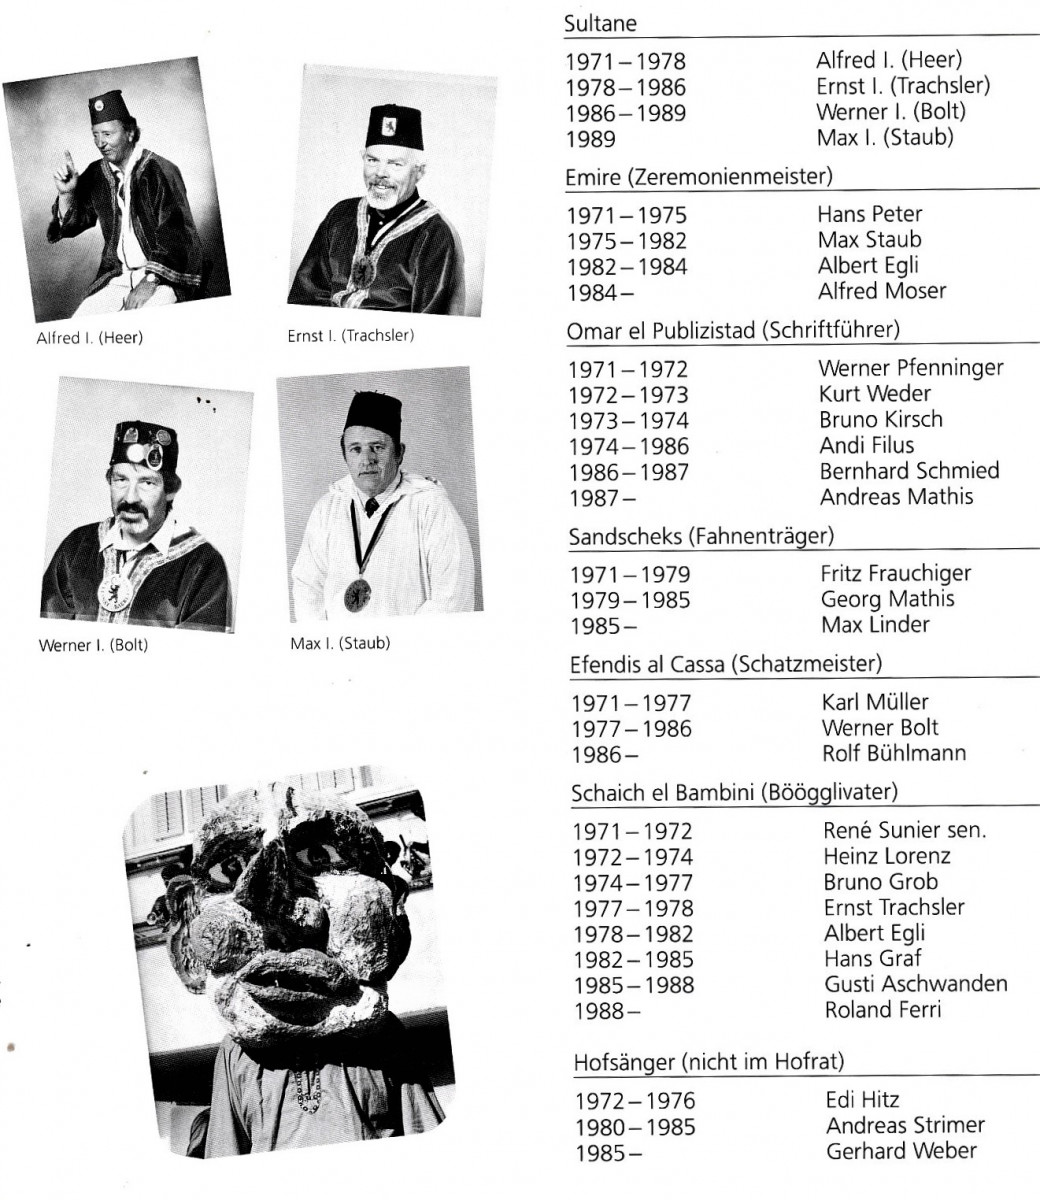 Sultanat Bäretswil, Mitglieder des Sultanats Bäretswil und ihre Aufgaben von 1971 bis 1990